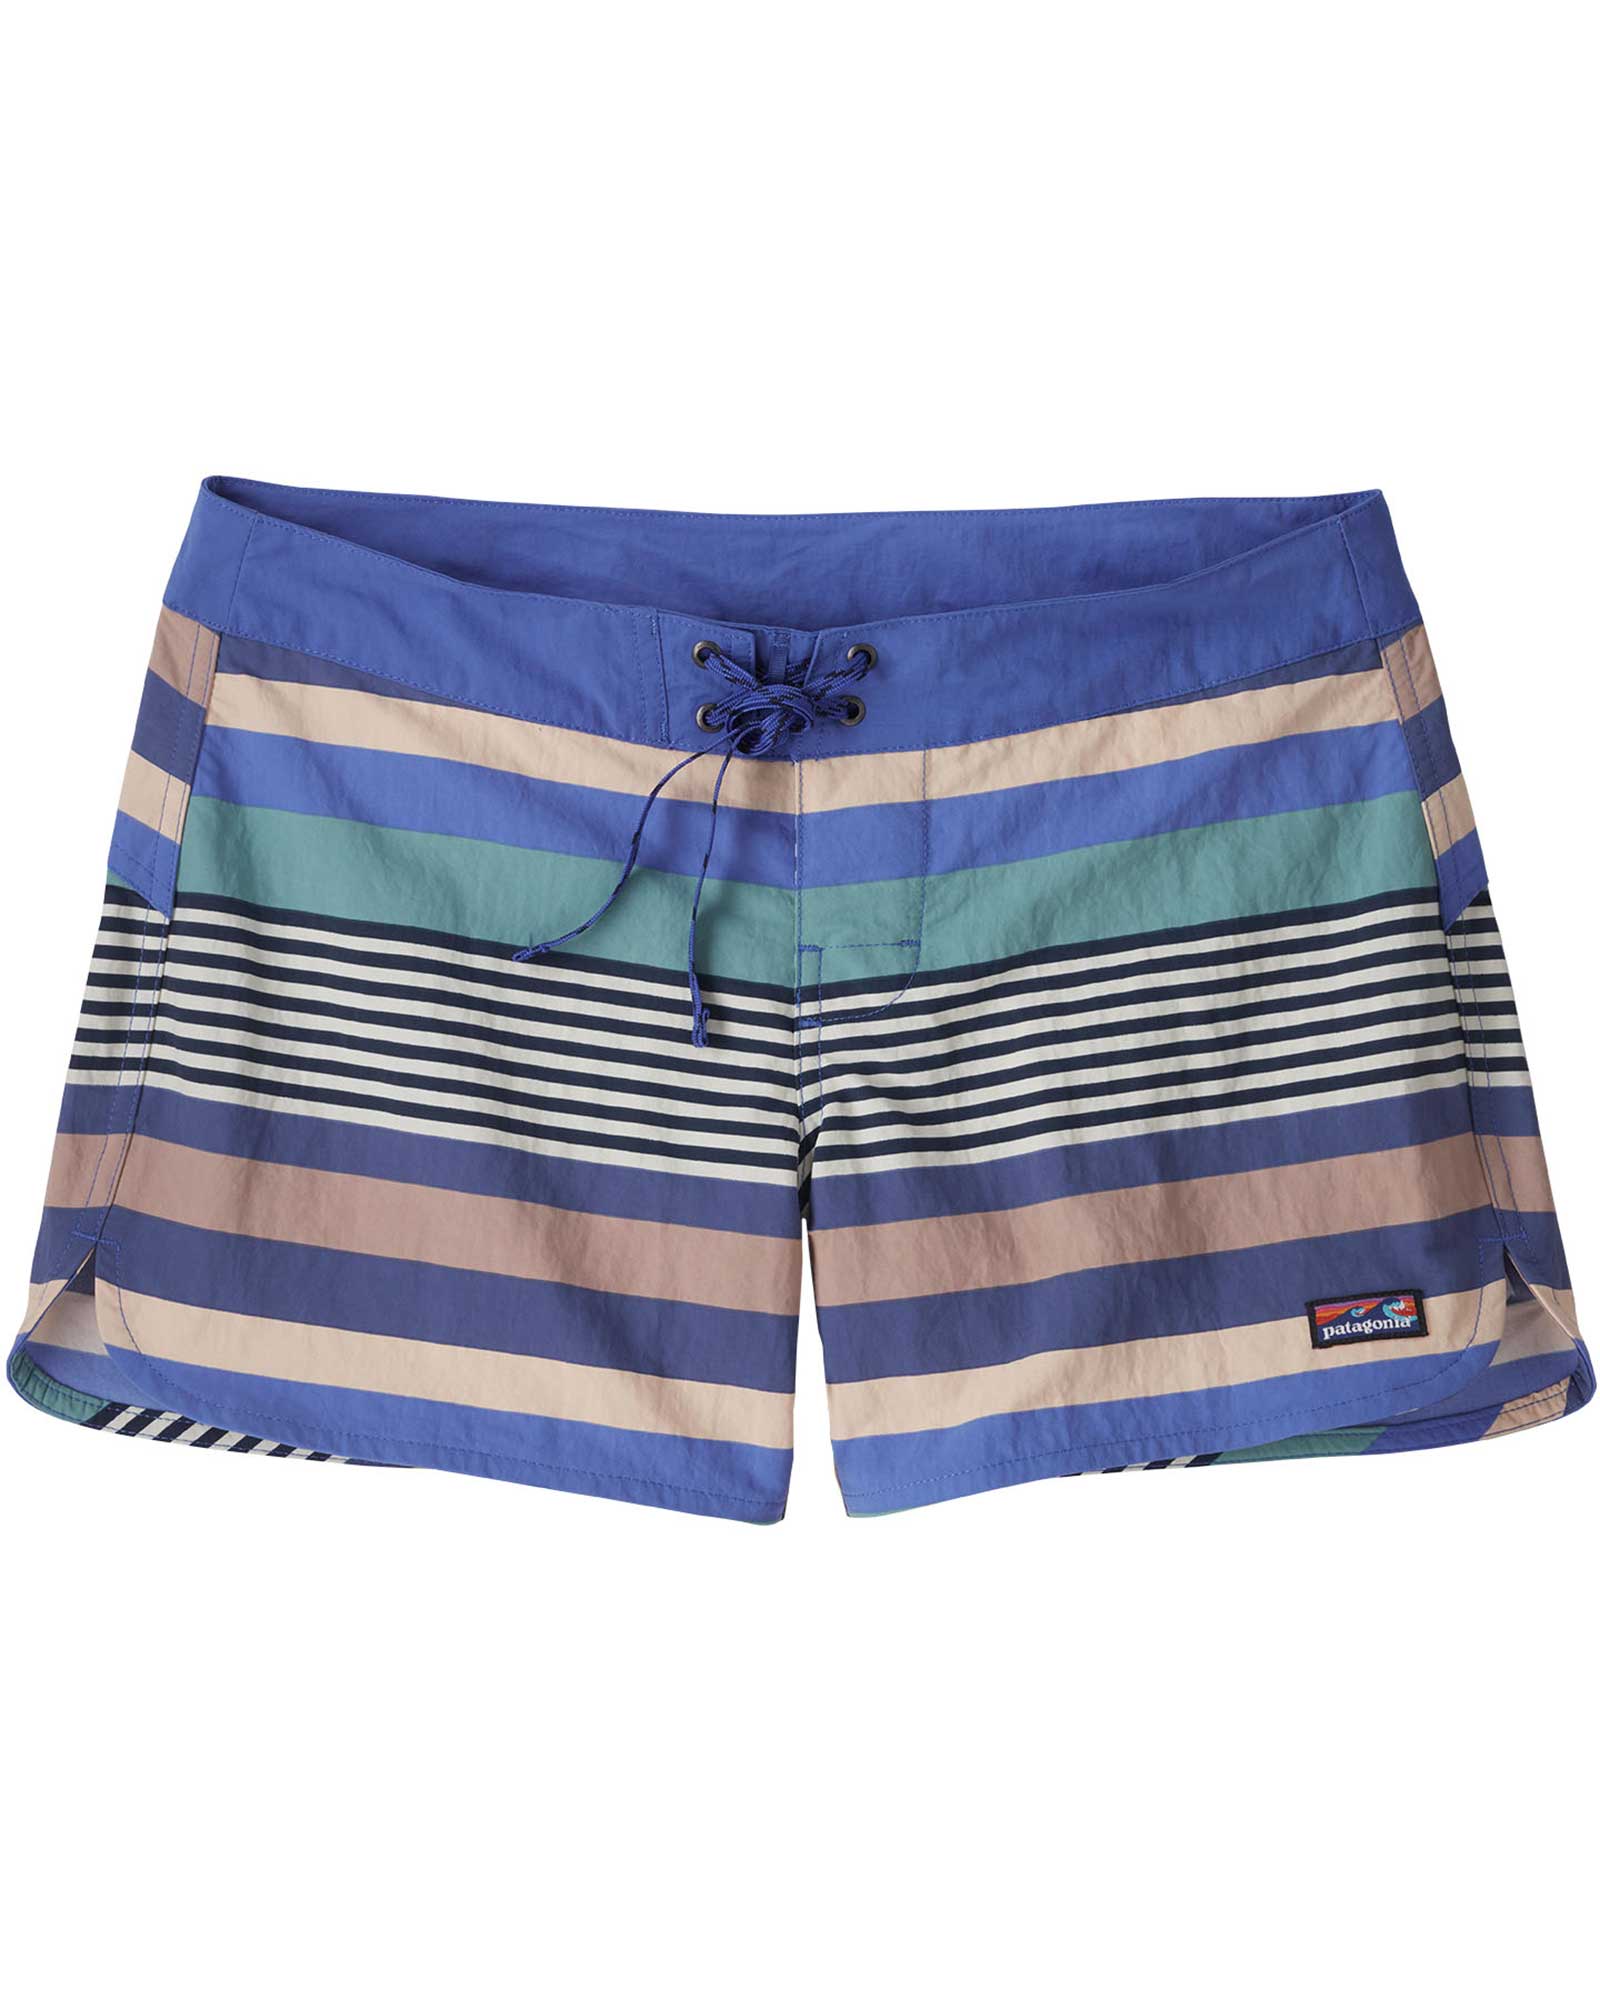 Patagonia Wavefarer Women’s 5" Board Shorts - Float Blue/Fitz Stripe 14